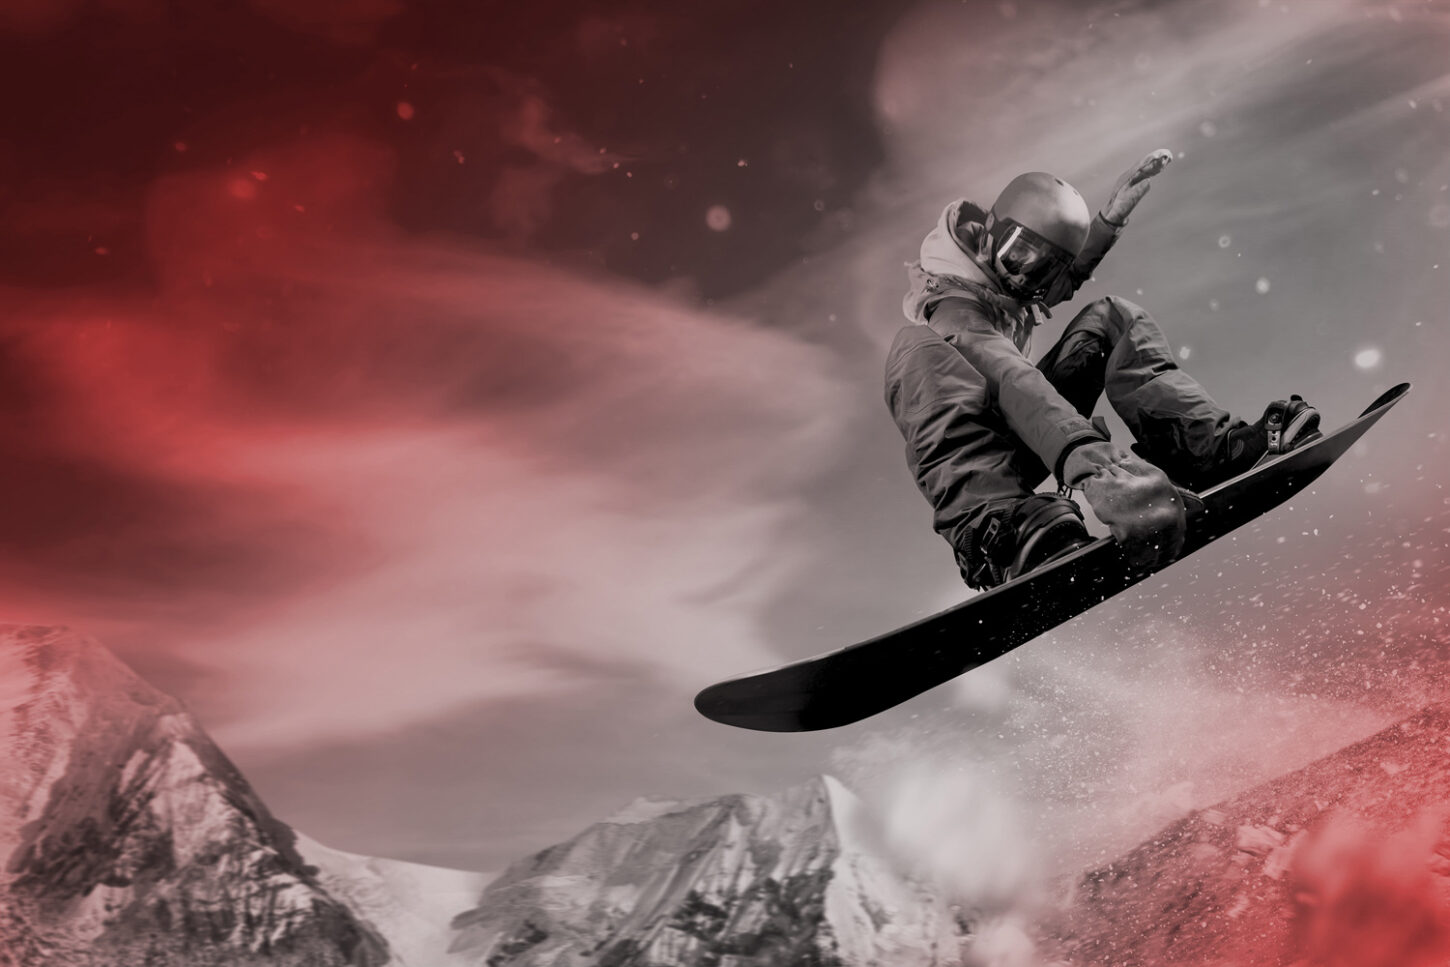 In Snowboarder beim Sprung. Symbolbild für die Kampagne für go.graubuenden.ch